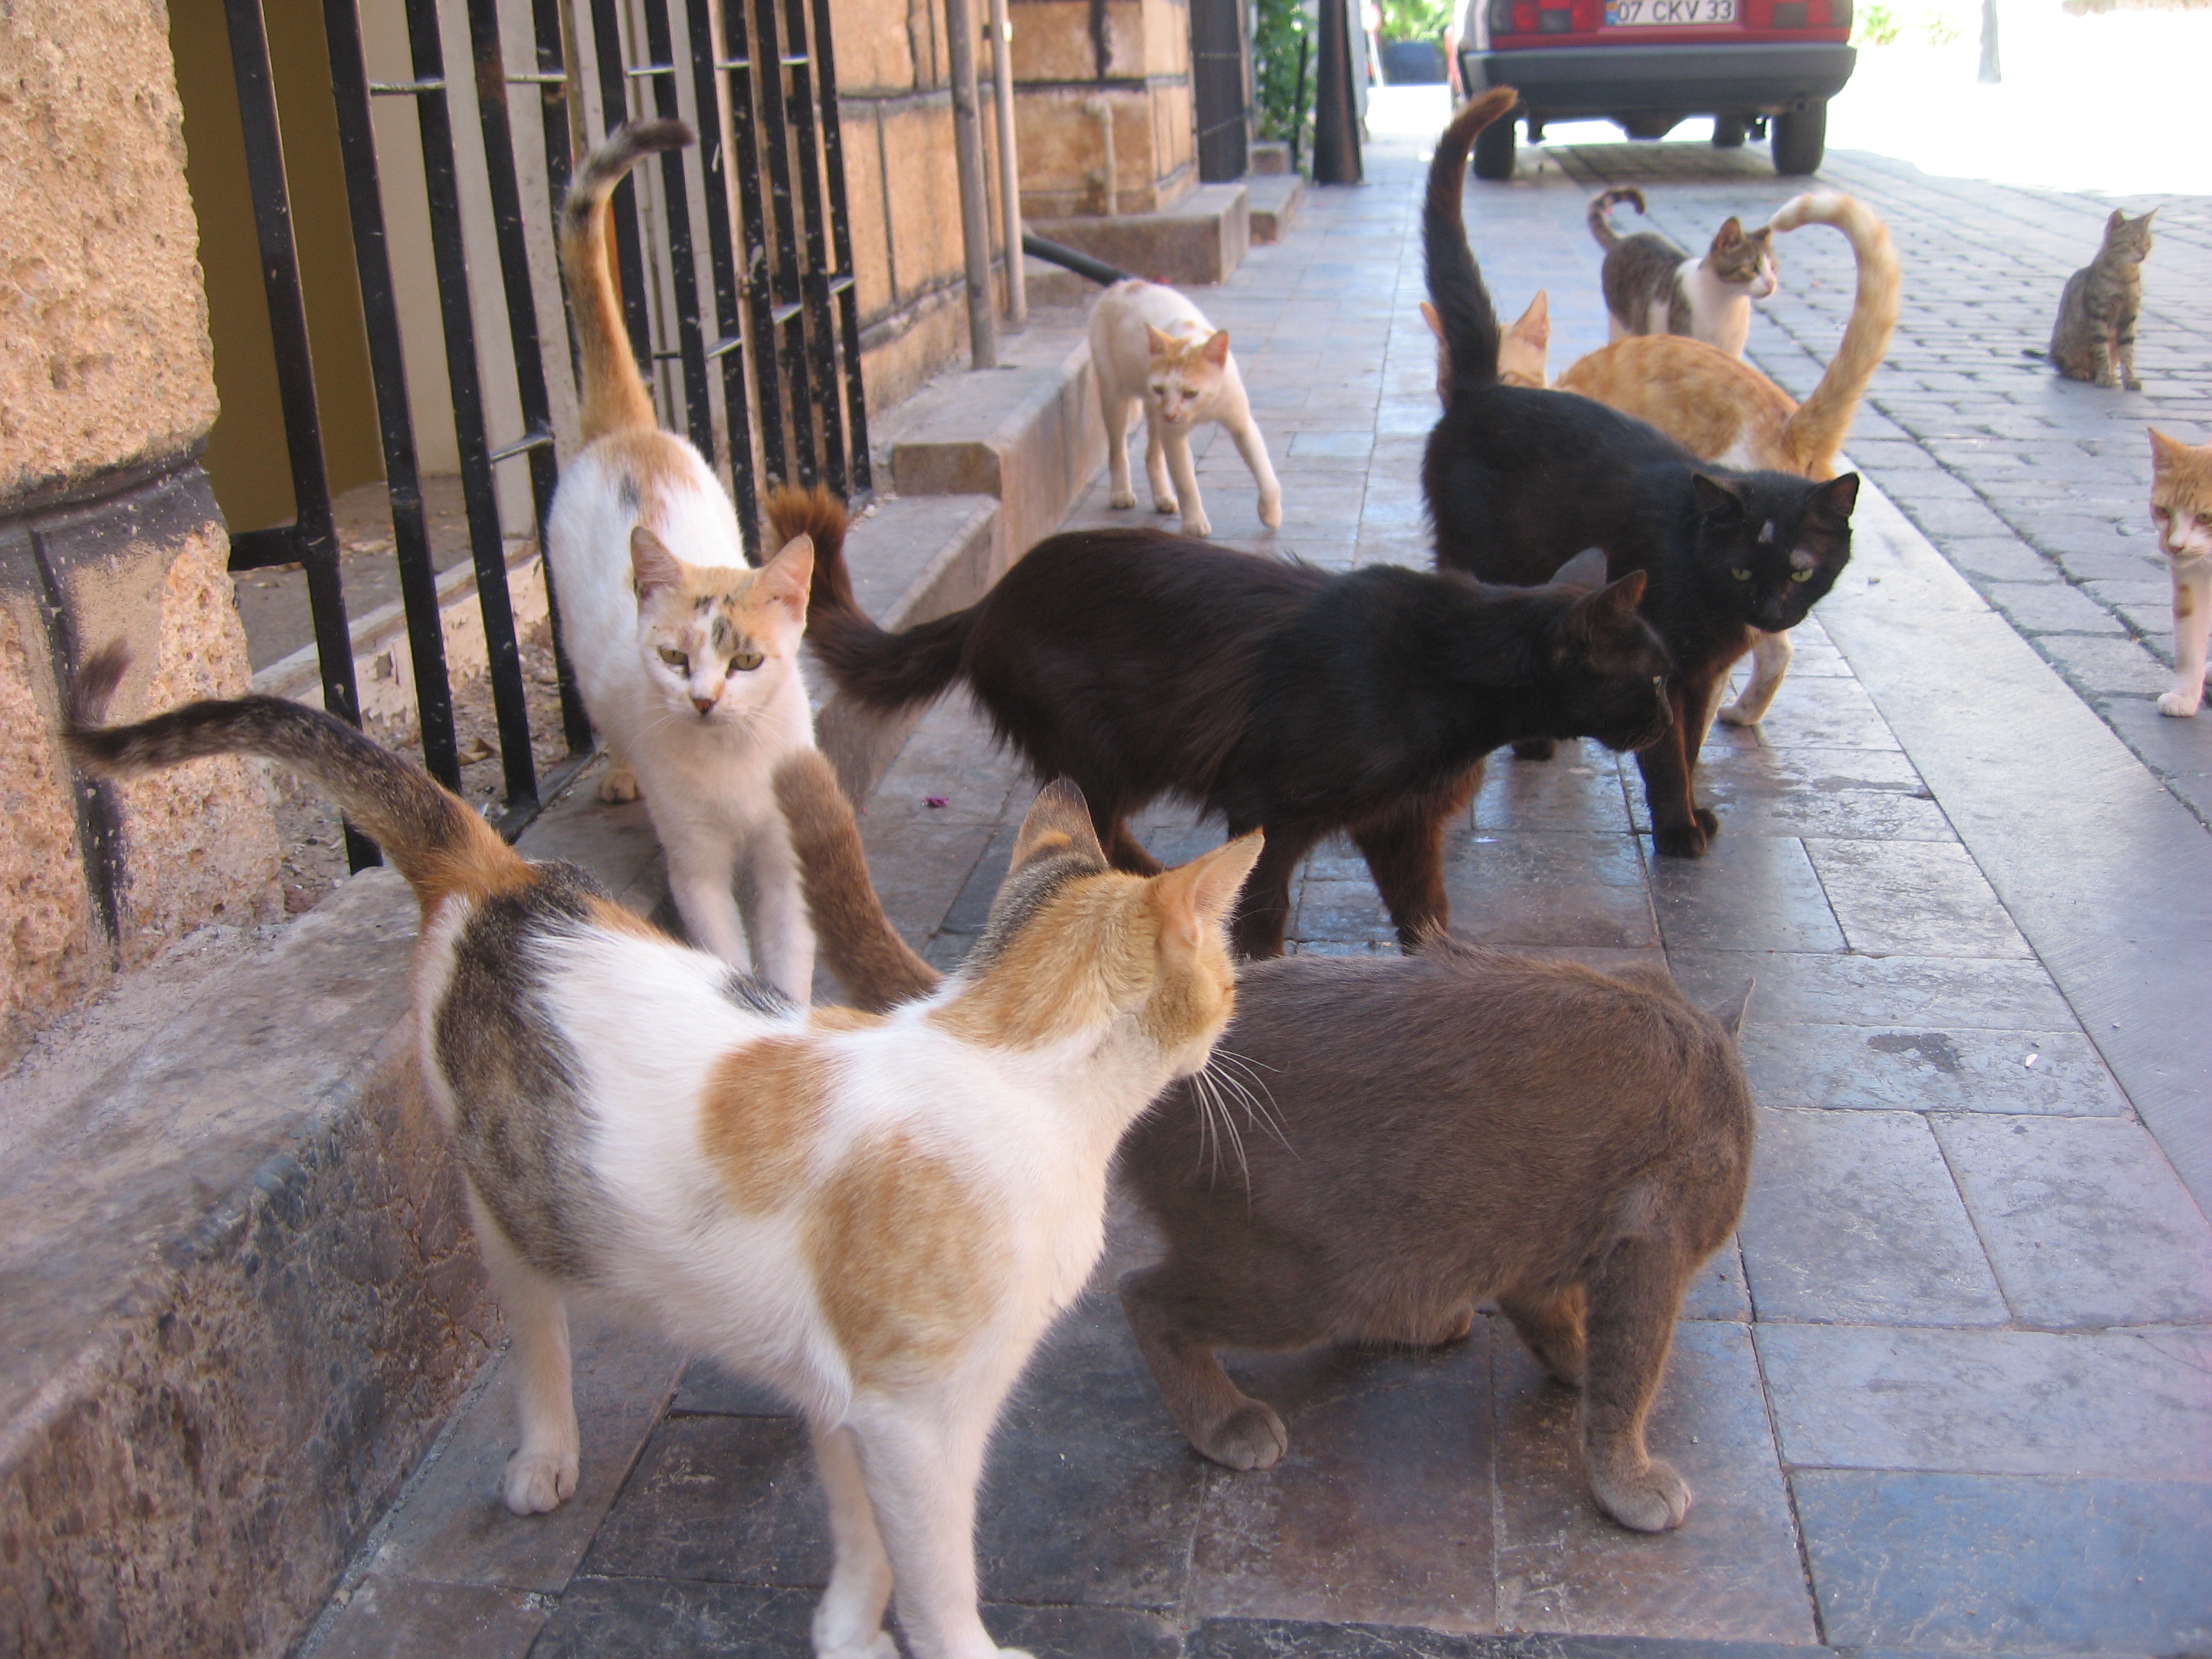 Herd of cats